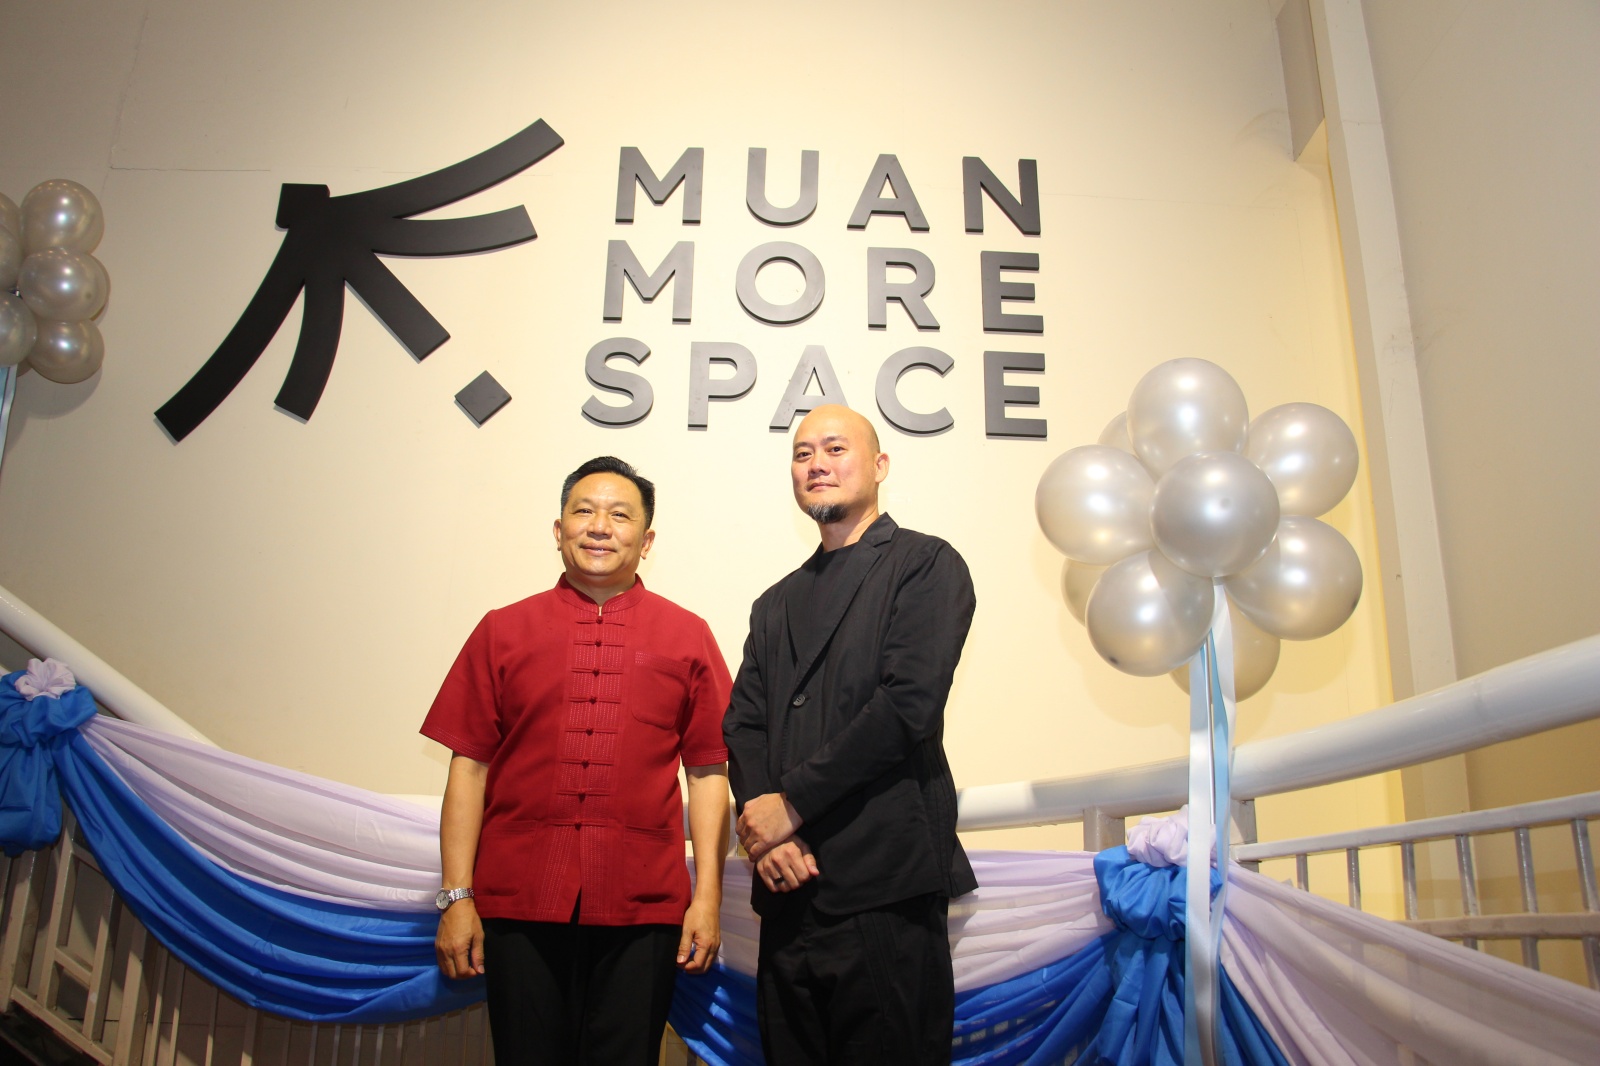 ผู้ว่าฯ เชียงใหม่ ร่วมแสดงความยินดีในงานเปิดตัวโรงละคร Muan More Space ศูนย์รวมจัดงานอีเวนท์แบบครบวงจร